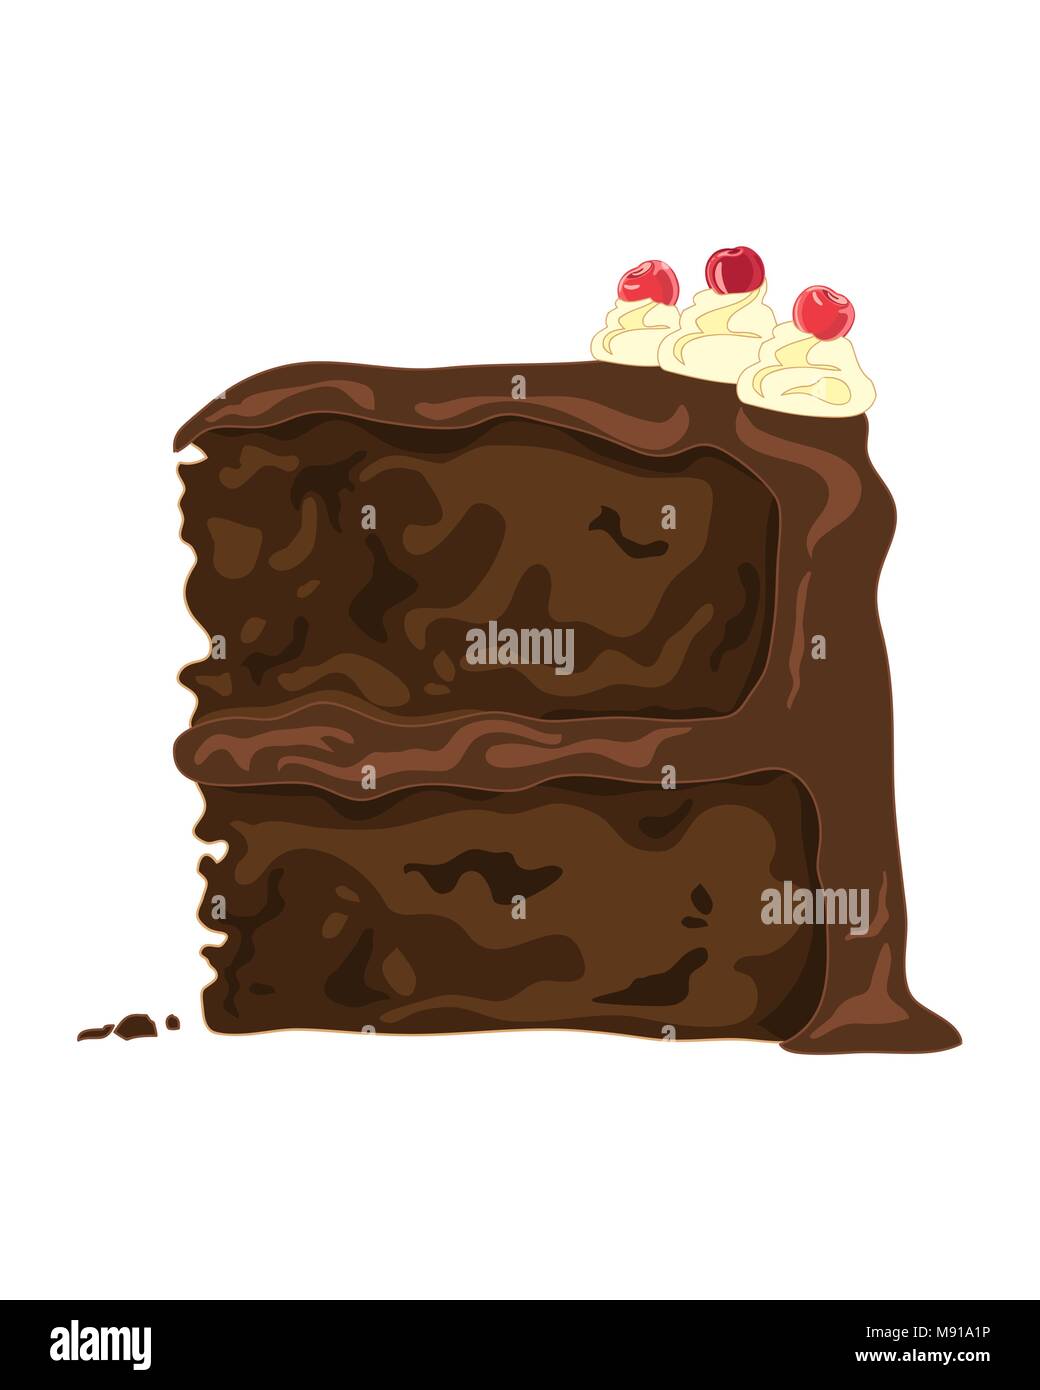 Un vecteur illustration en eps 8 format d'une tranche de gâteau au chocolat avec crème swirls et cerise sur un fond blanc Illustration de Vecteur